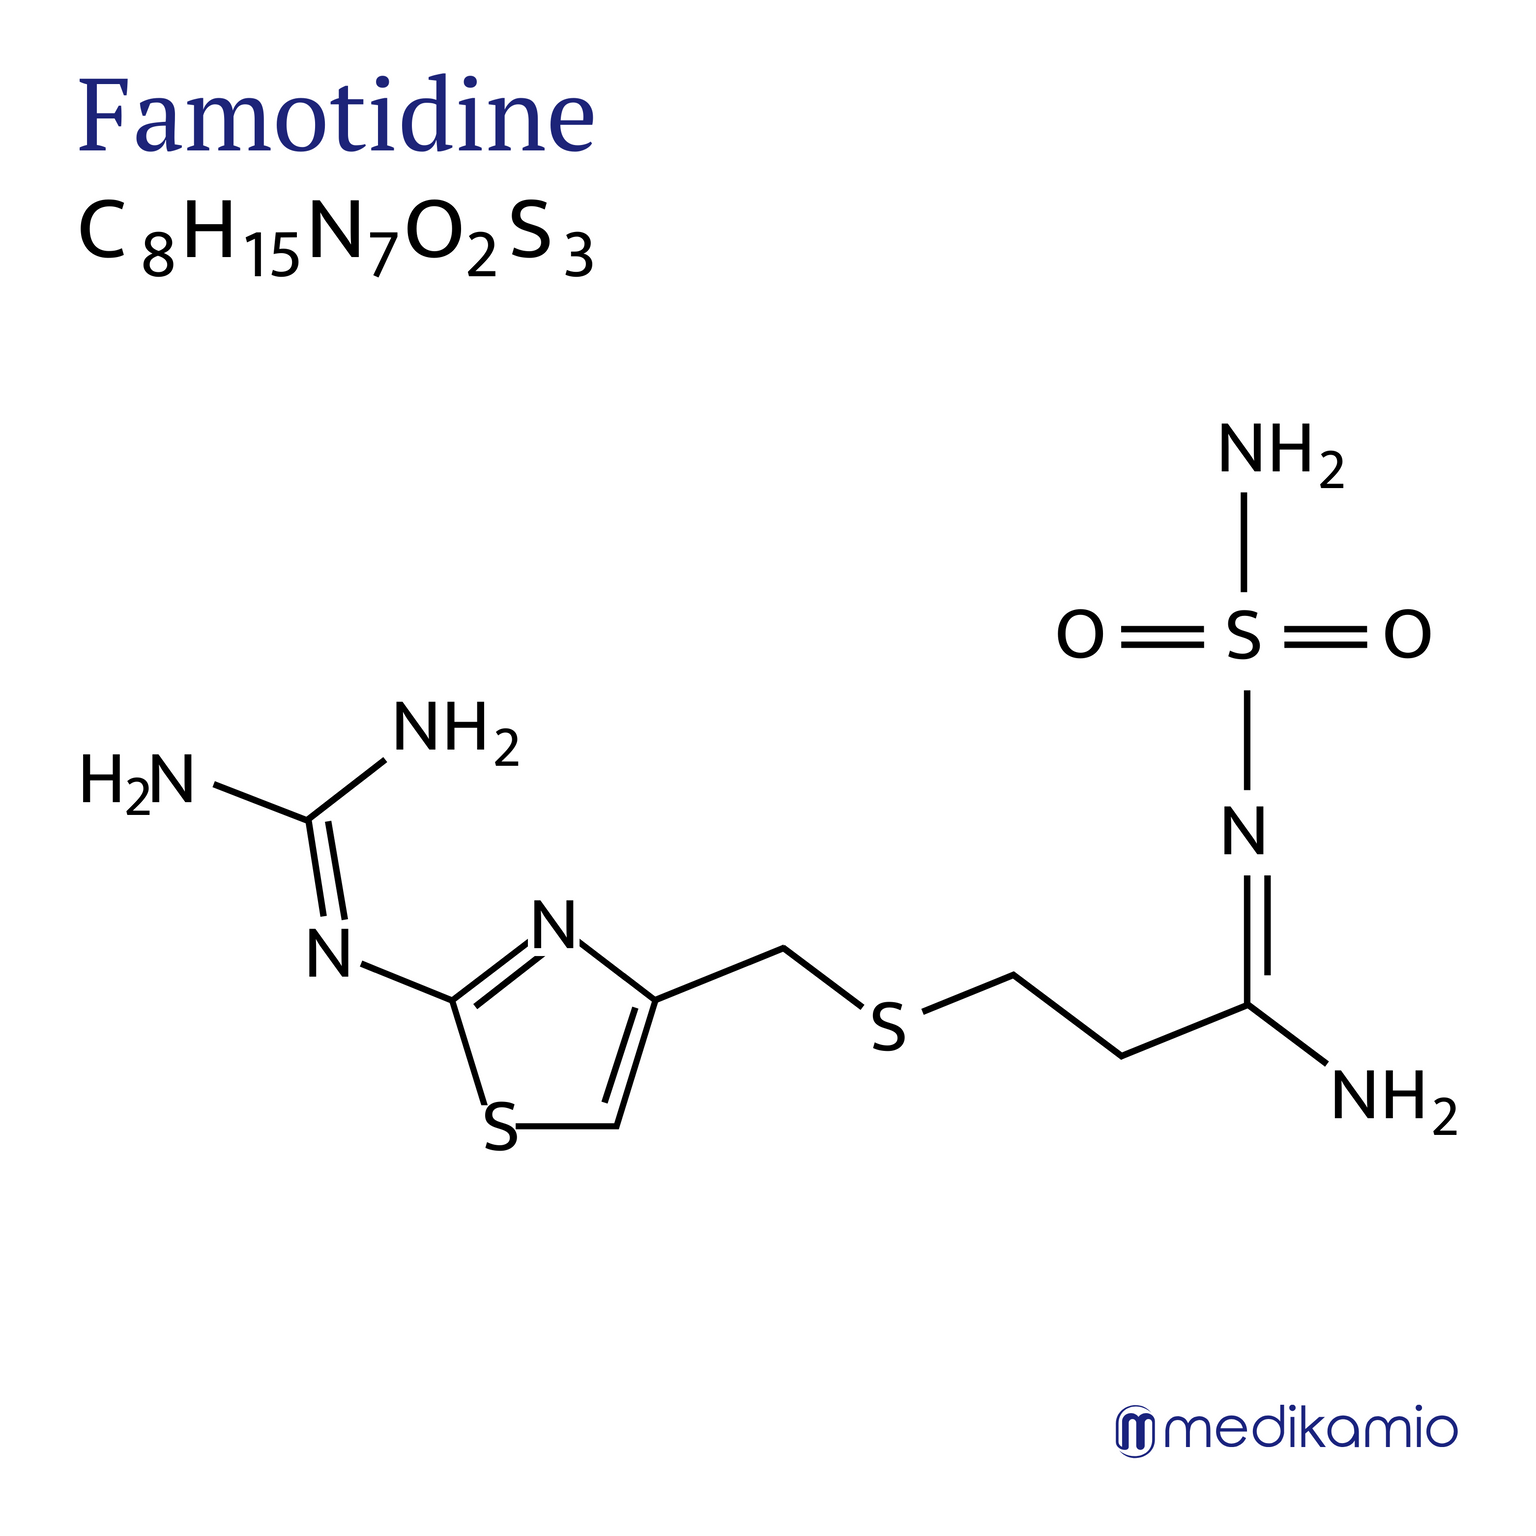 Fórmula estructural gráfica del principio activo famotidina